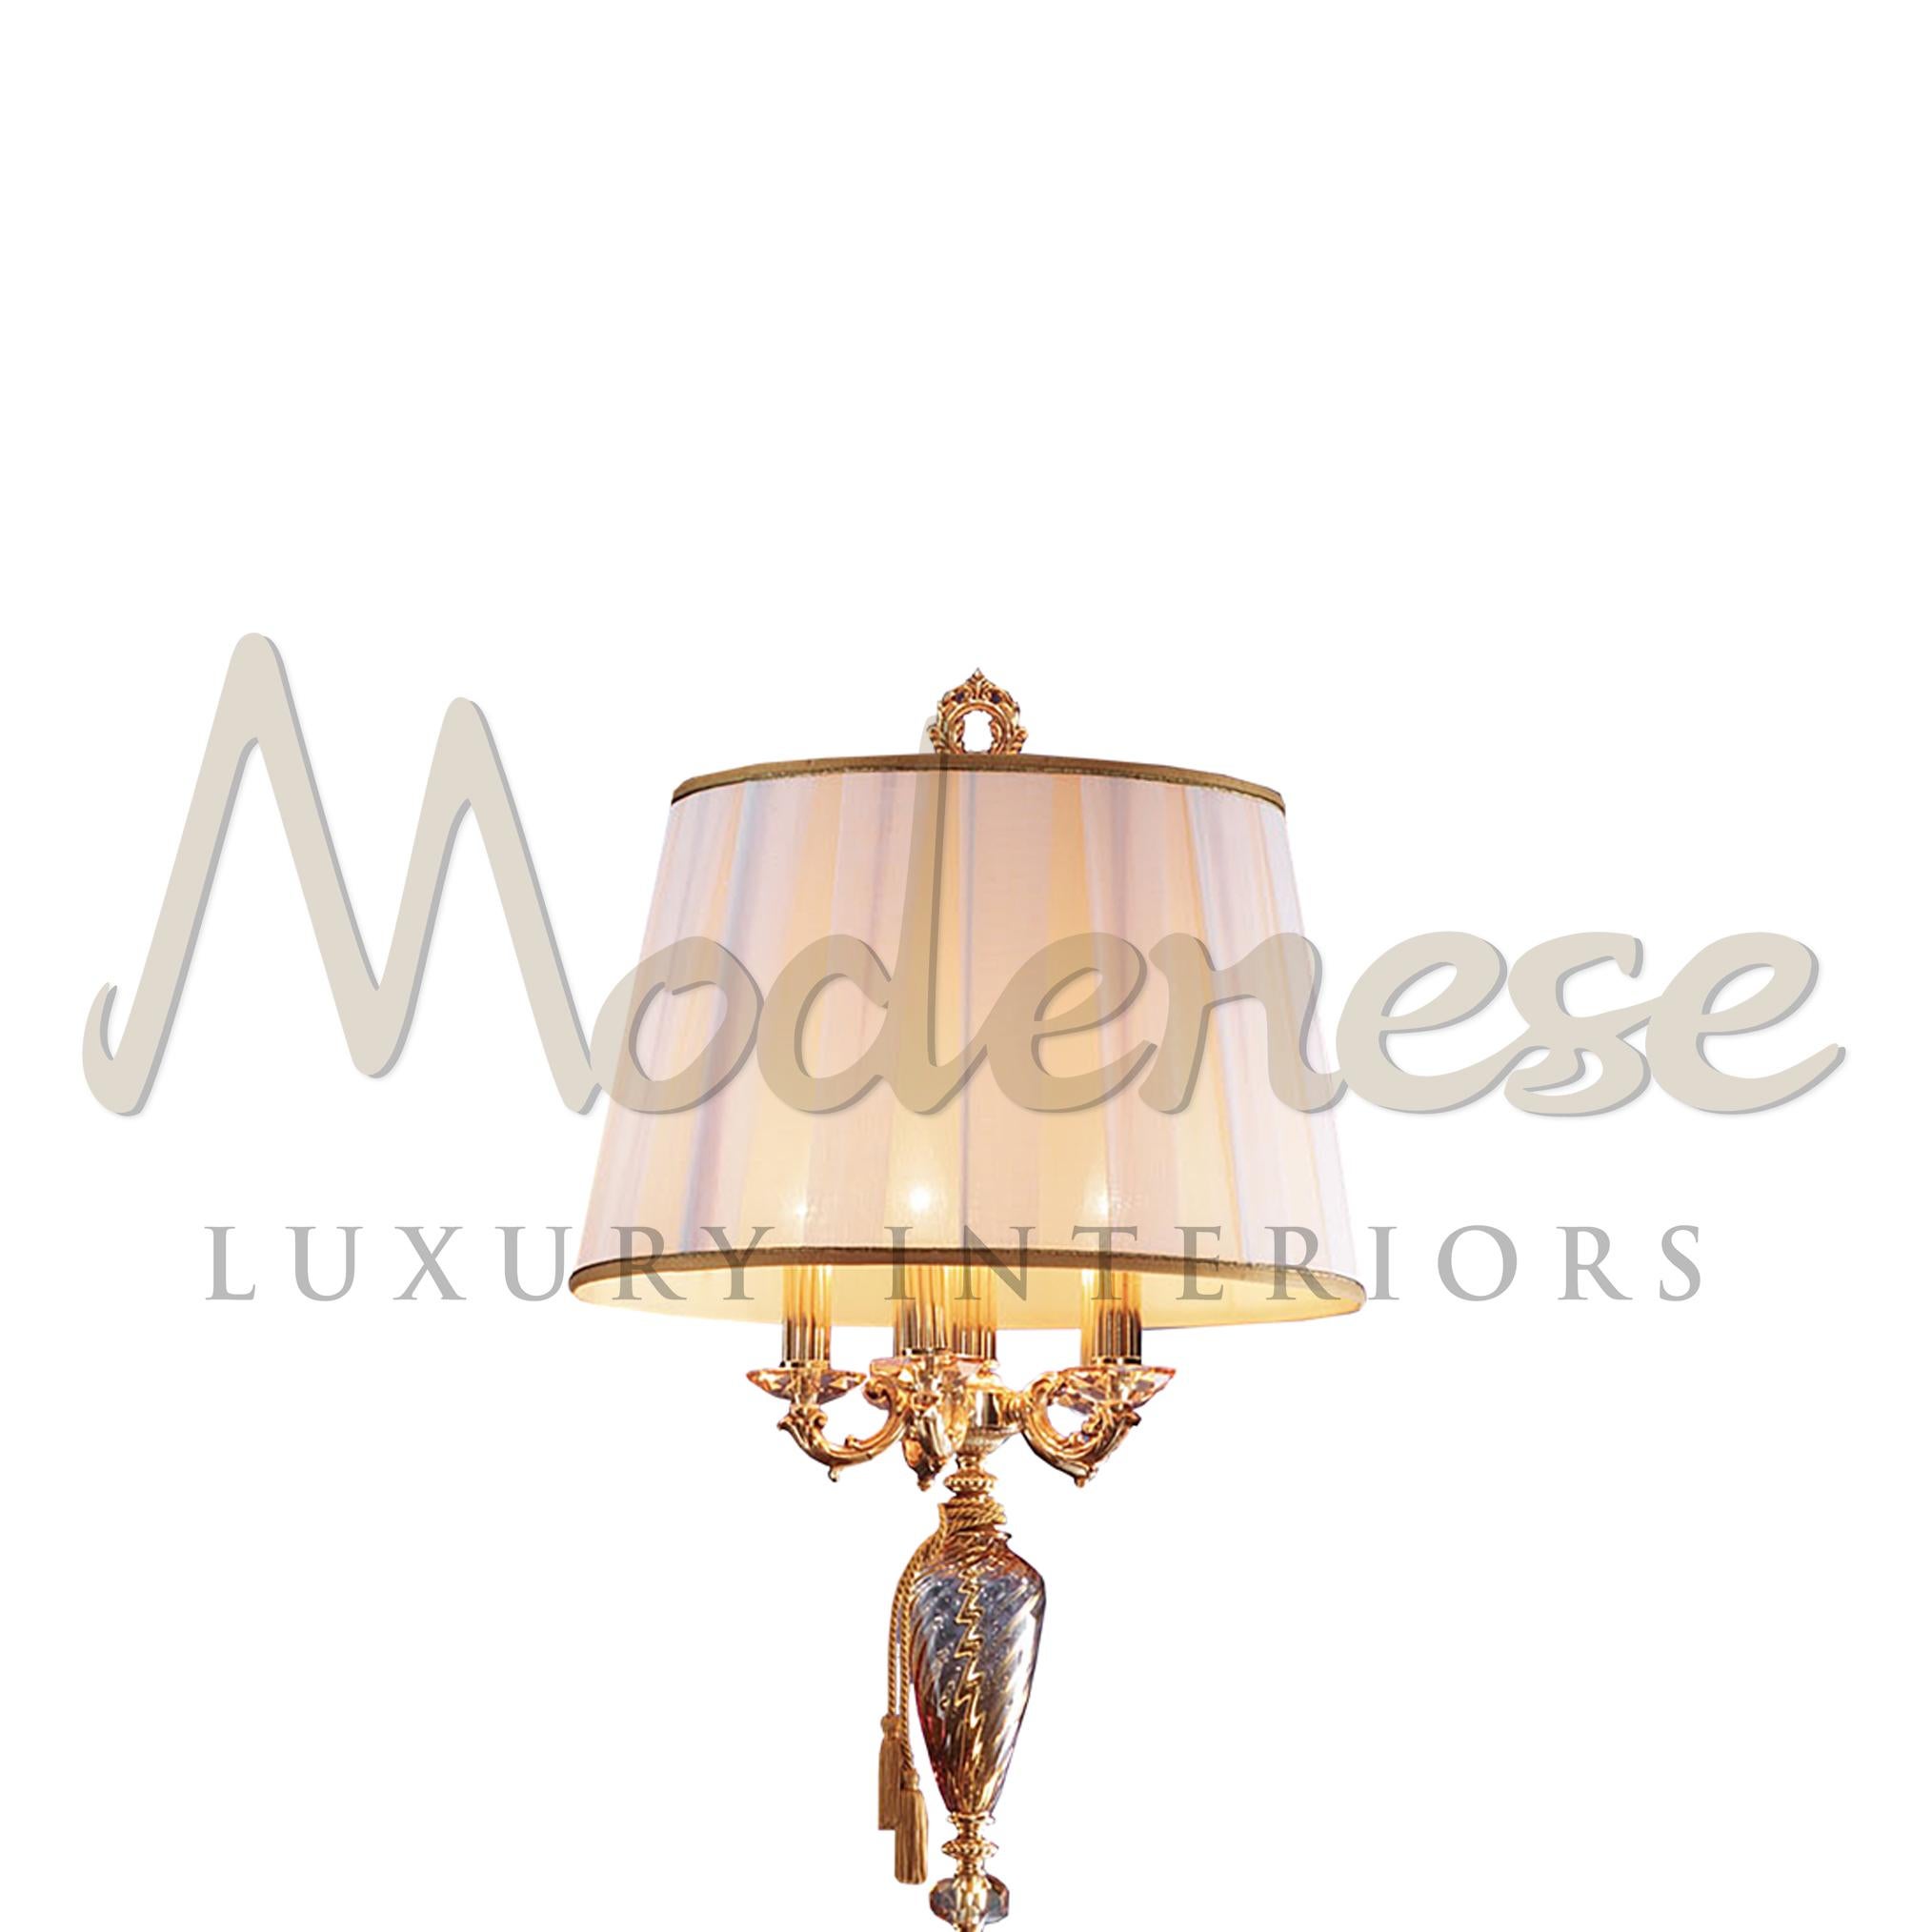 Plongez dans le luxe avec ce lampadaire en verre ambré de Modenese Luxury Interiors. La ligne droite du mât central, orné d'une finition dorée à la française, supporte délicatement 4 ampoules protégées par un large abat-jour ivoire. Modenese réécrit